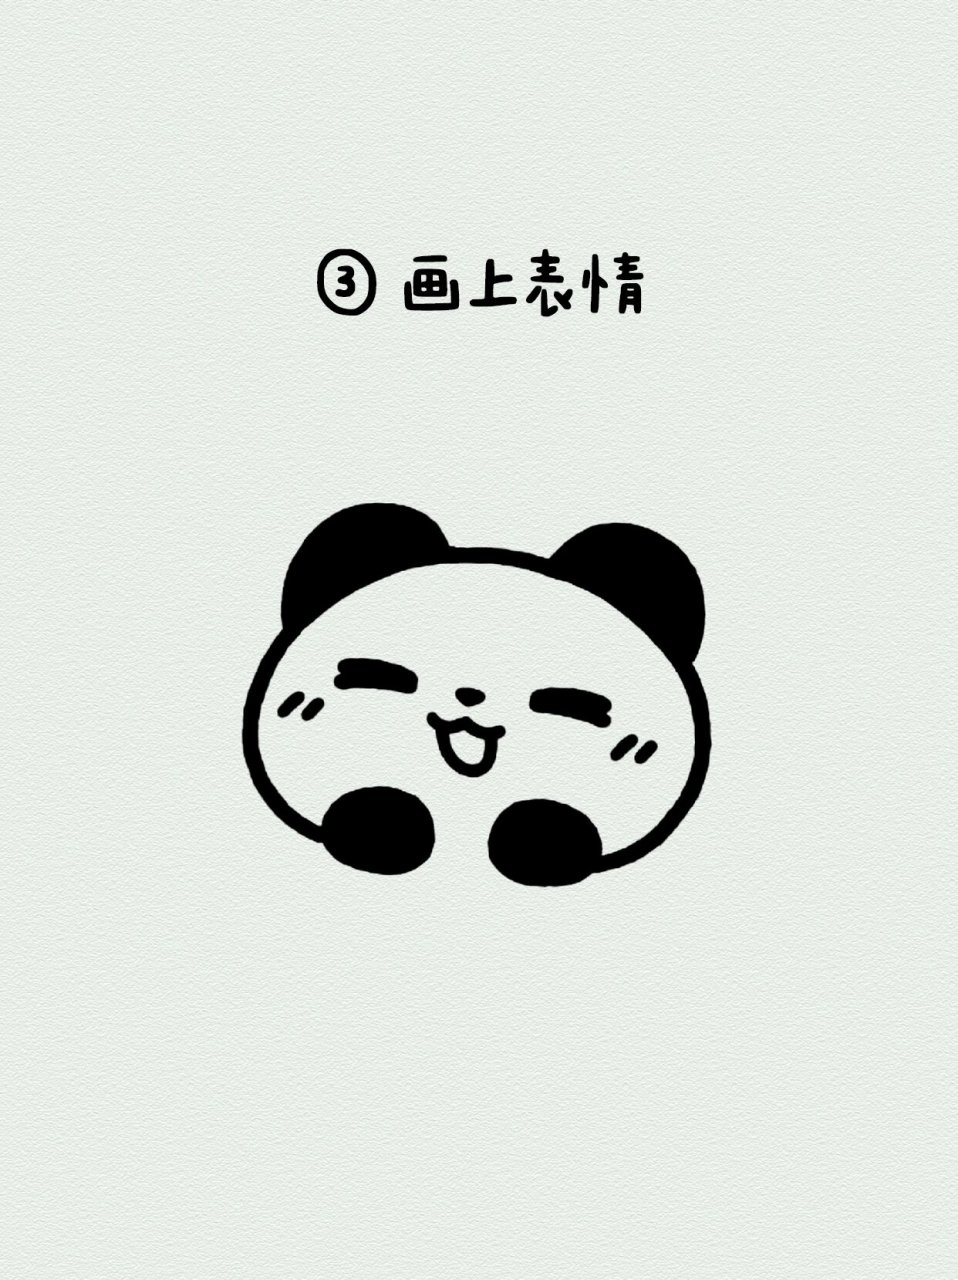 儿童简笔画:小熊猫 超简单的小熊猫画法快和孩子们一起动手画吧!